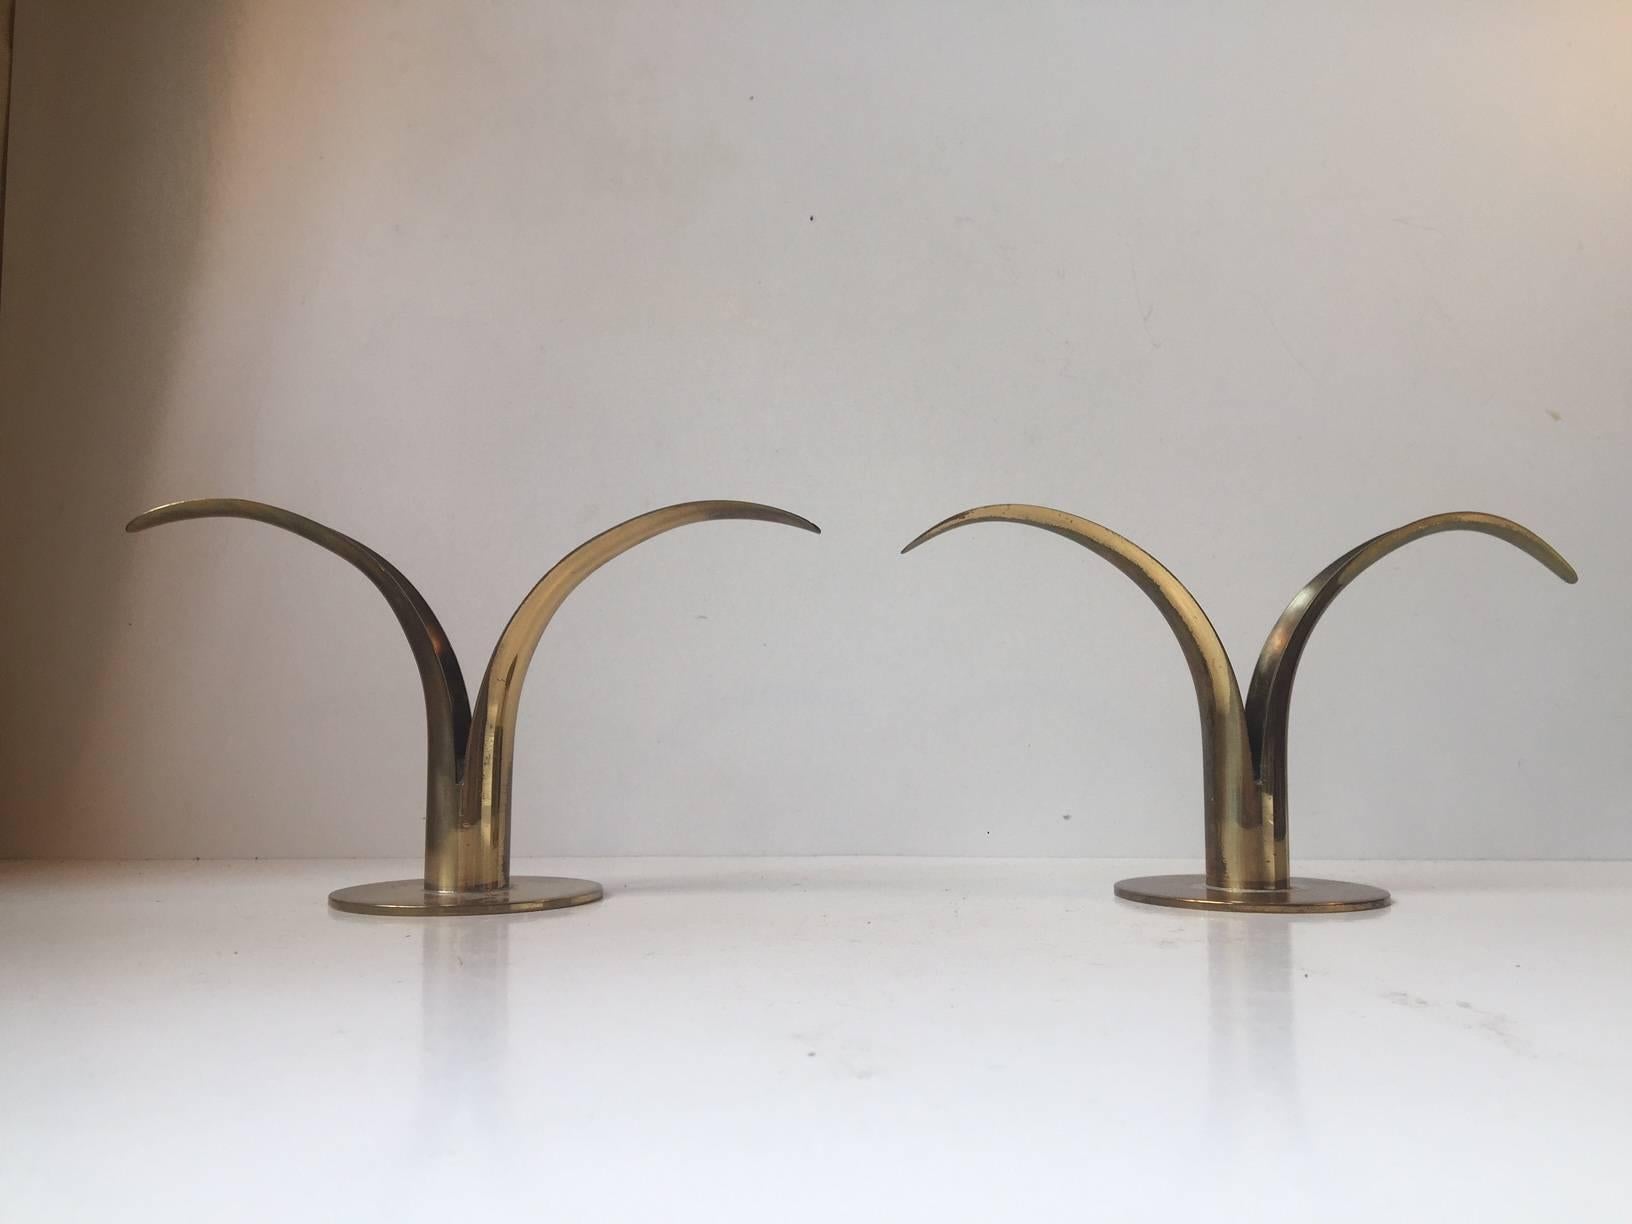 Une paire de chandeliers en laiton conçus par Ivar A°lenius Bjo¨rk. Le modèle s'appelle 